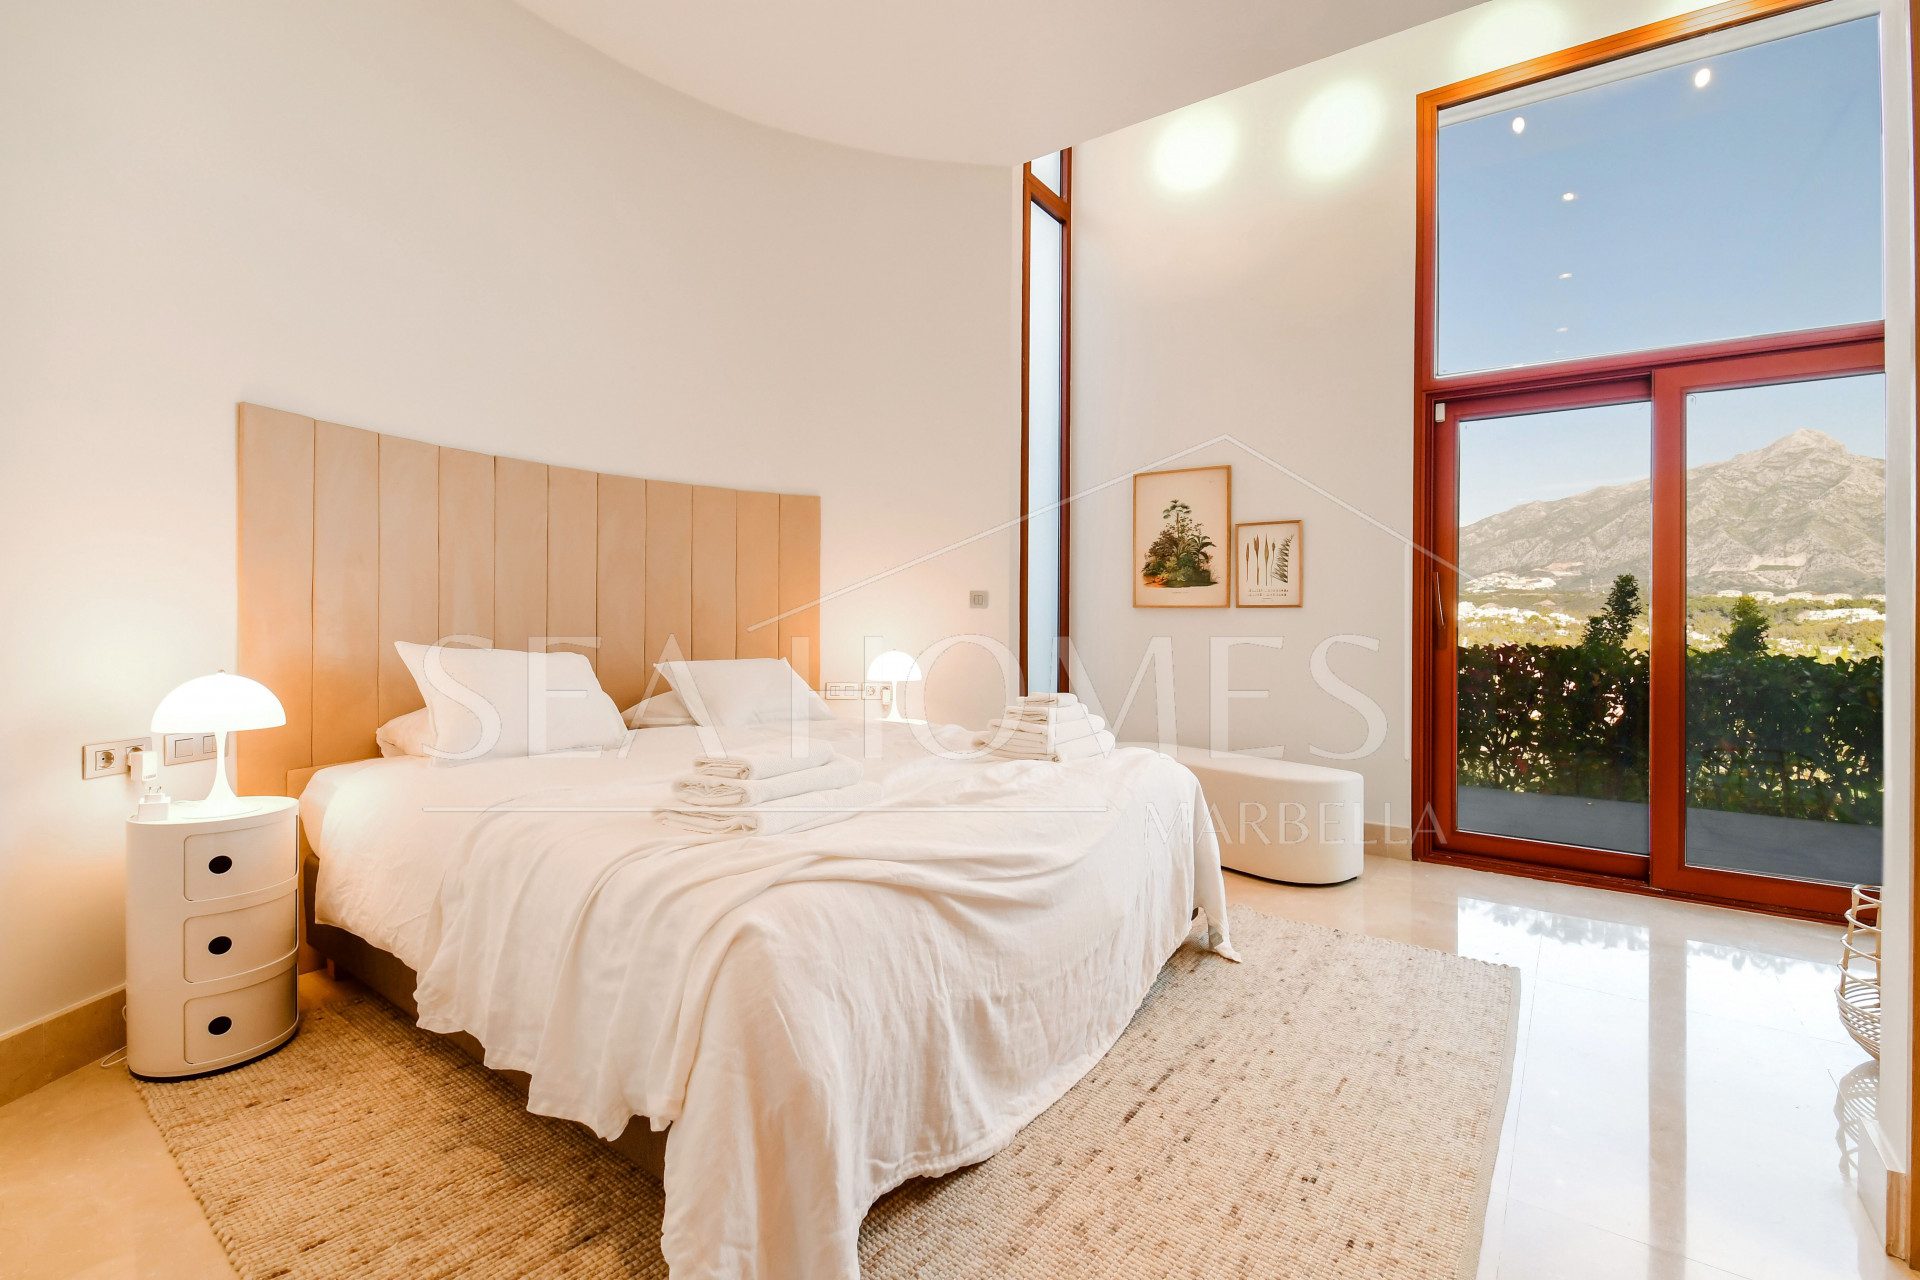 7 Bedroom Villa in Nueva Andalucía - 5 minutes away from Puerto Banús!